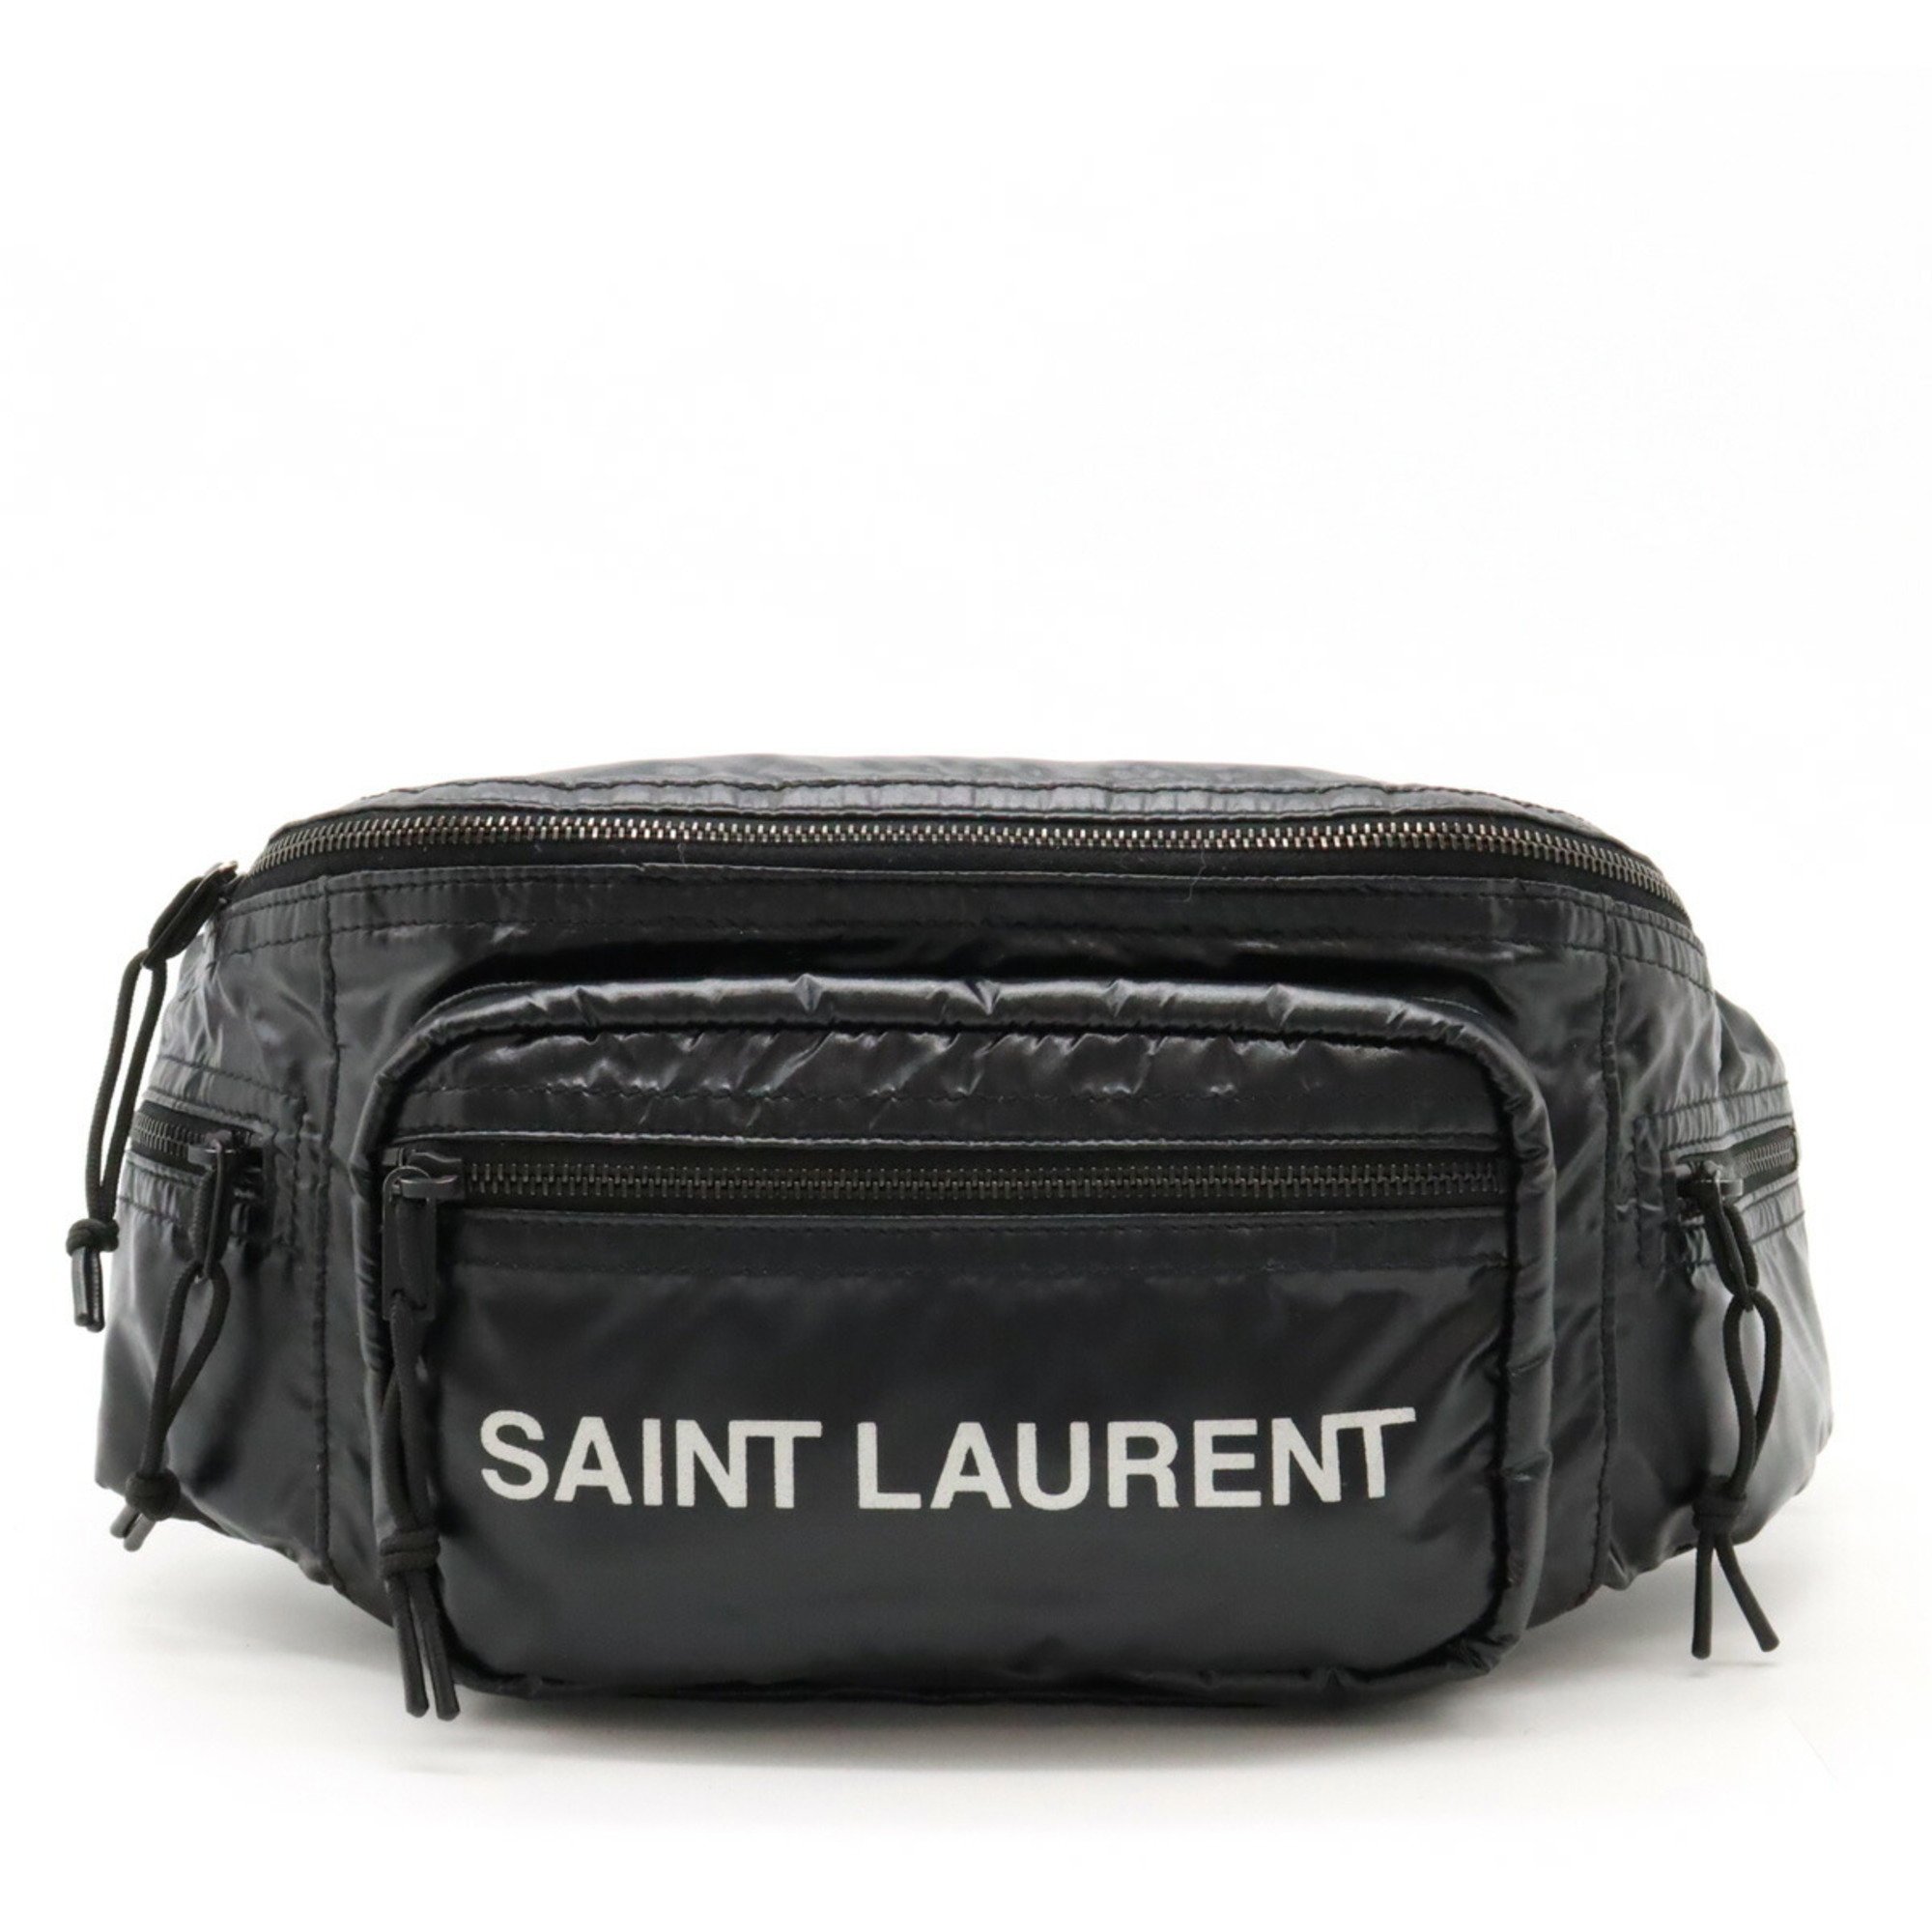 SAINT LAURENT PARIS YSL Yves Saint Laurent NUXX Waist Bag Body Nylon Black 581375